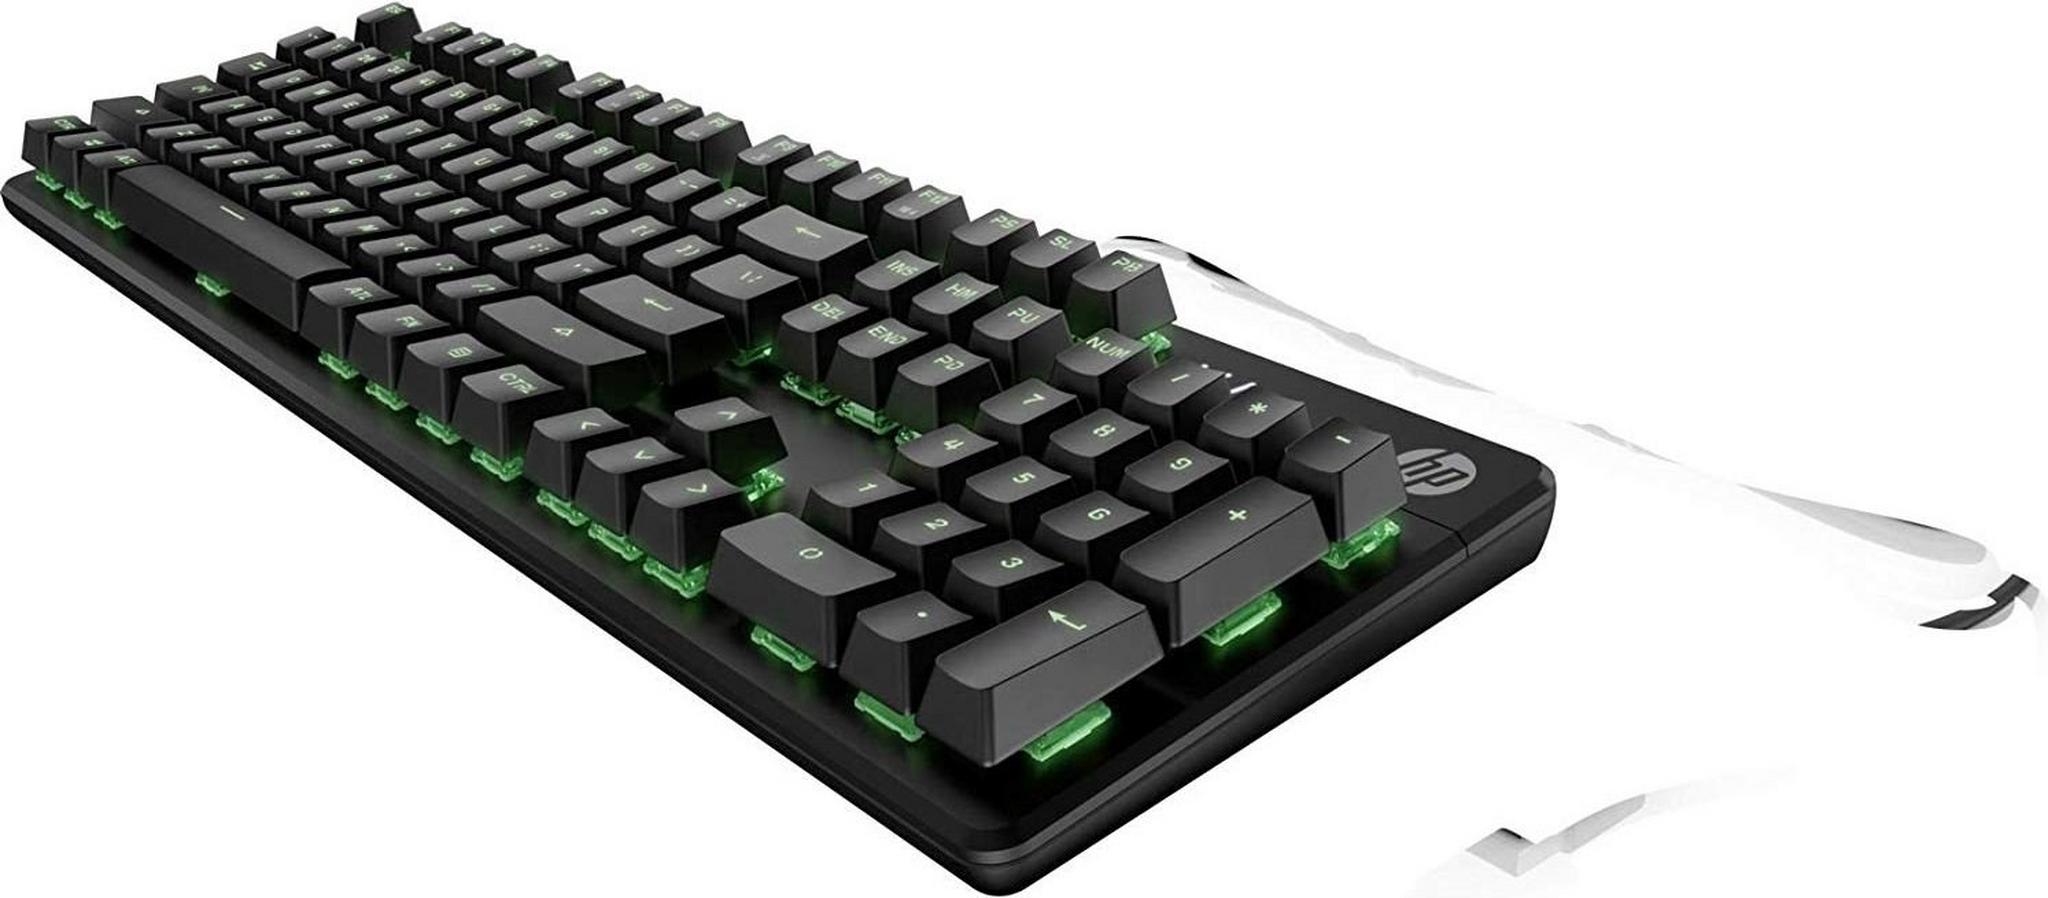 HP Pavilion Gaming Wired Keyboard 500 (ARAB) - Black